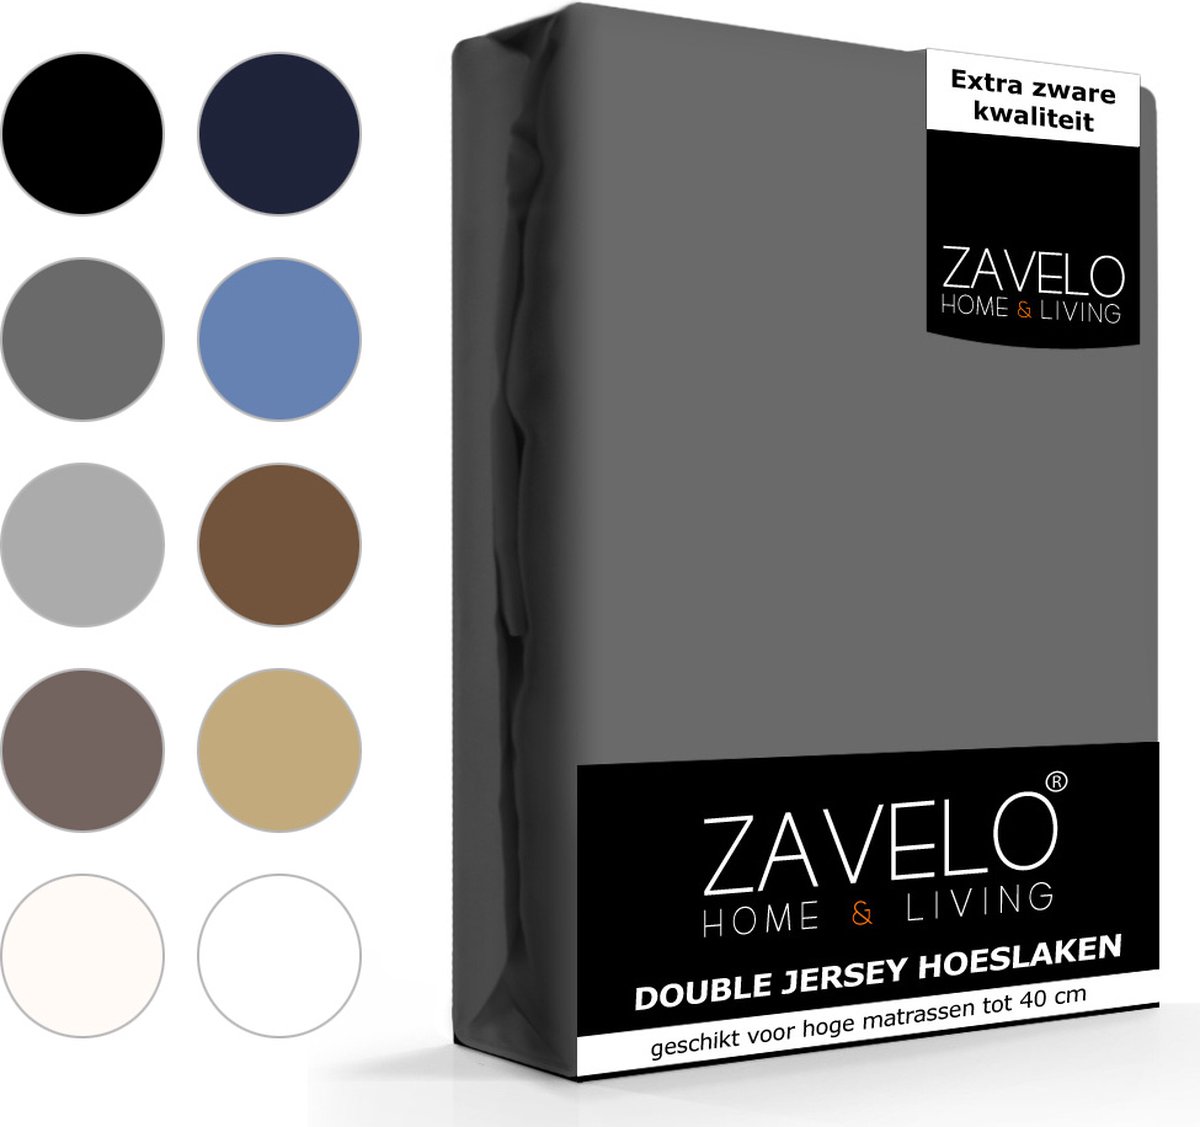 Slaaptextiel Zavelo Double Jersey Hoeslaken Antraciet-lits-jumeaux (160x200 Cm) - Grijs